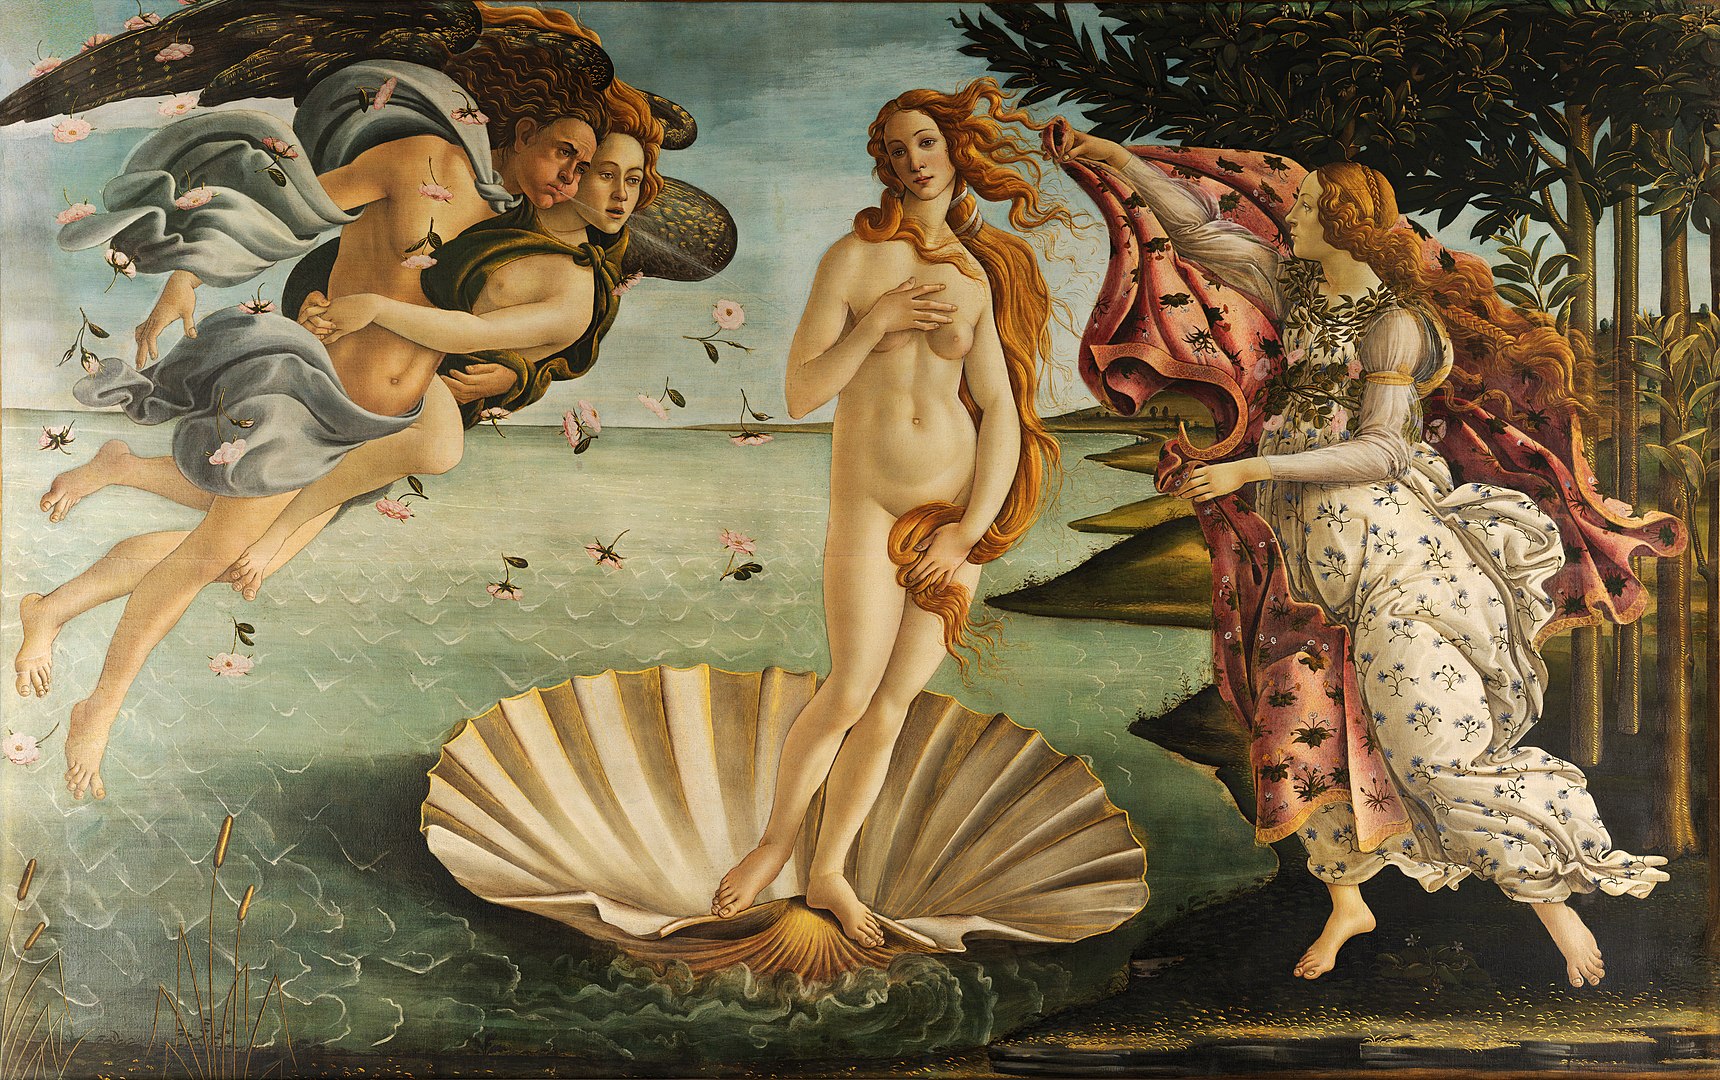 Рождение Венеры (The Birth of Venus) by Сандро Бот - Около 1484–1486 гг. - 72,5 × 278,9 см 